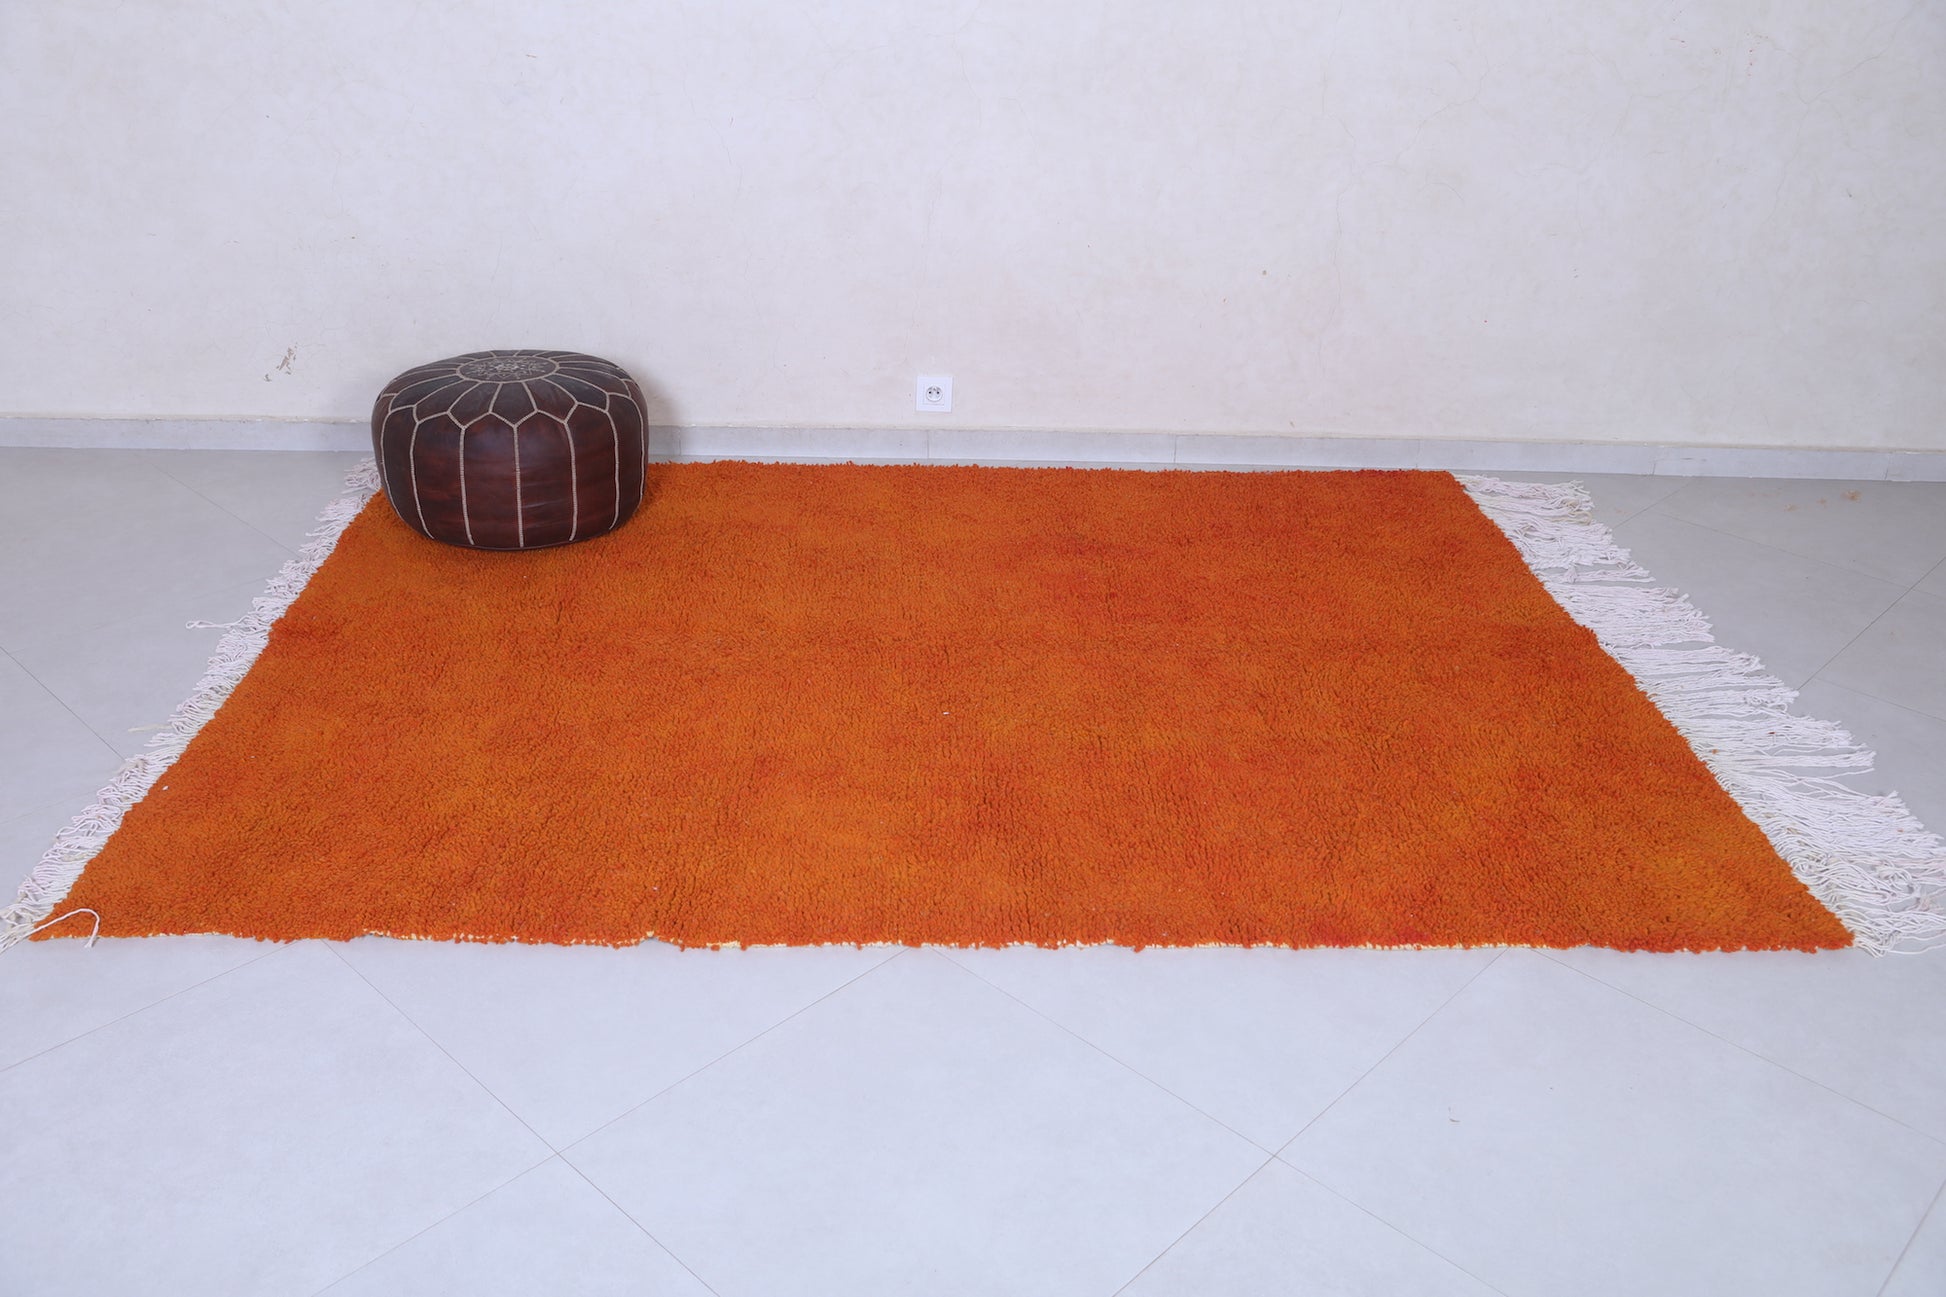 Moroccan rug 6 X 8.2 Feet